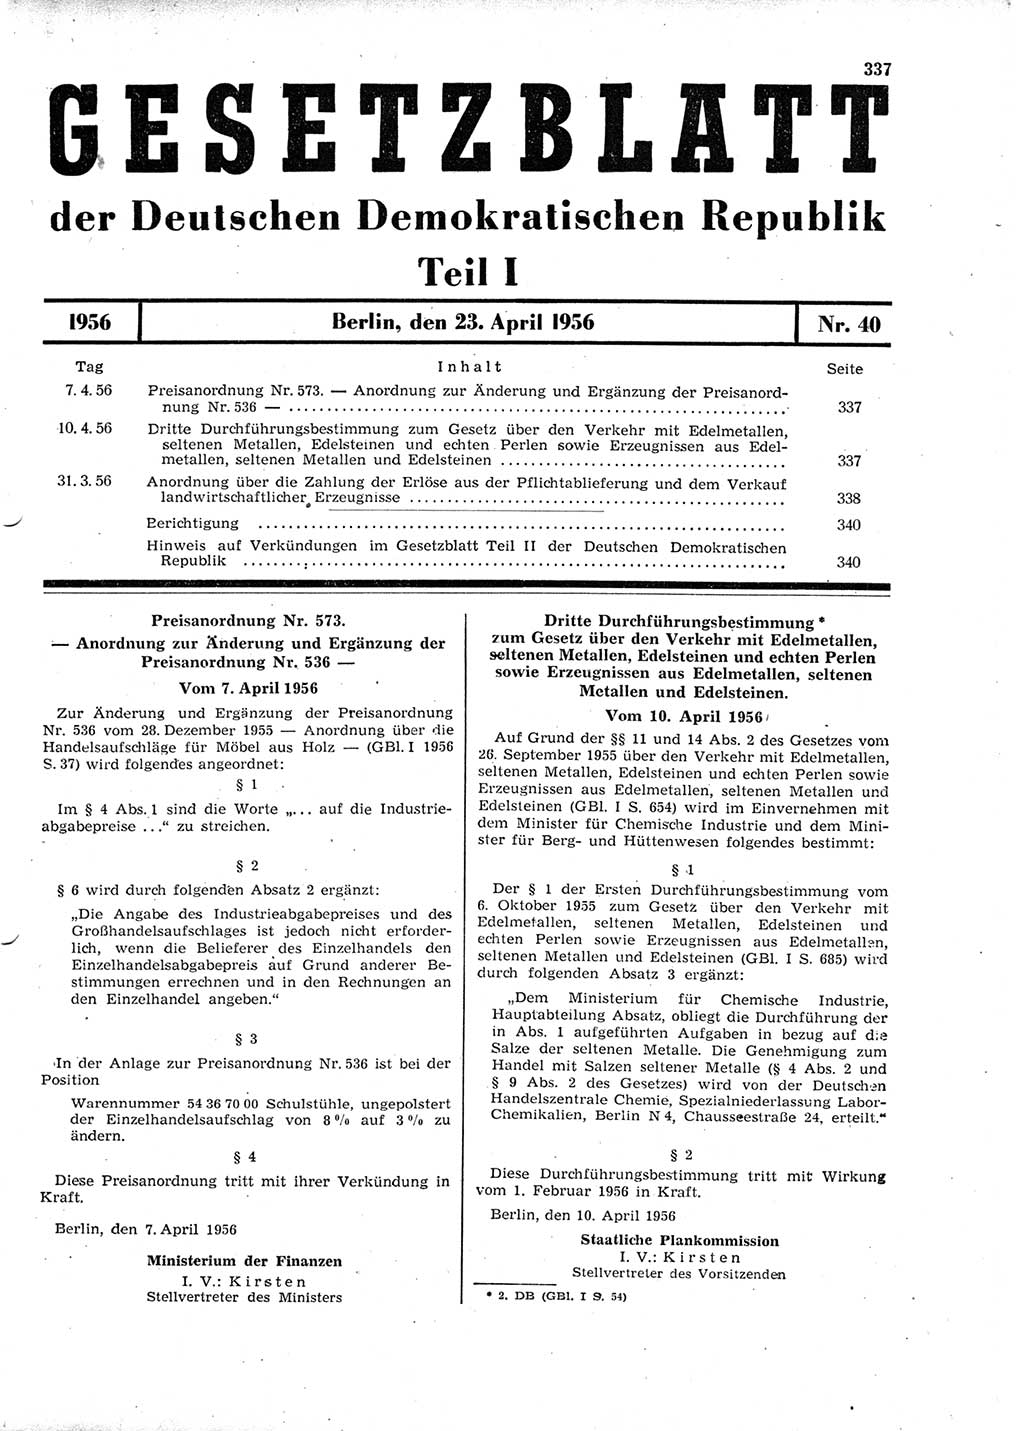 Gesetzblatt (GBl.) der Deutschen Demokratischen Republik (DDR) Teil Ⅰ 1956, Seite 337 (GBl. DDR Ⅰ 1956, S. 337)